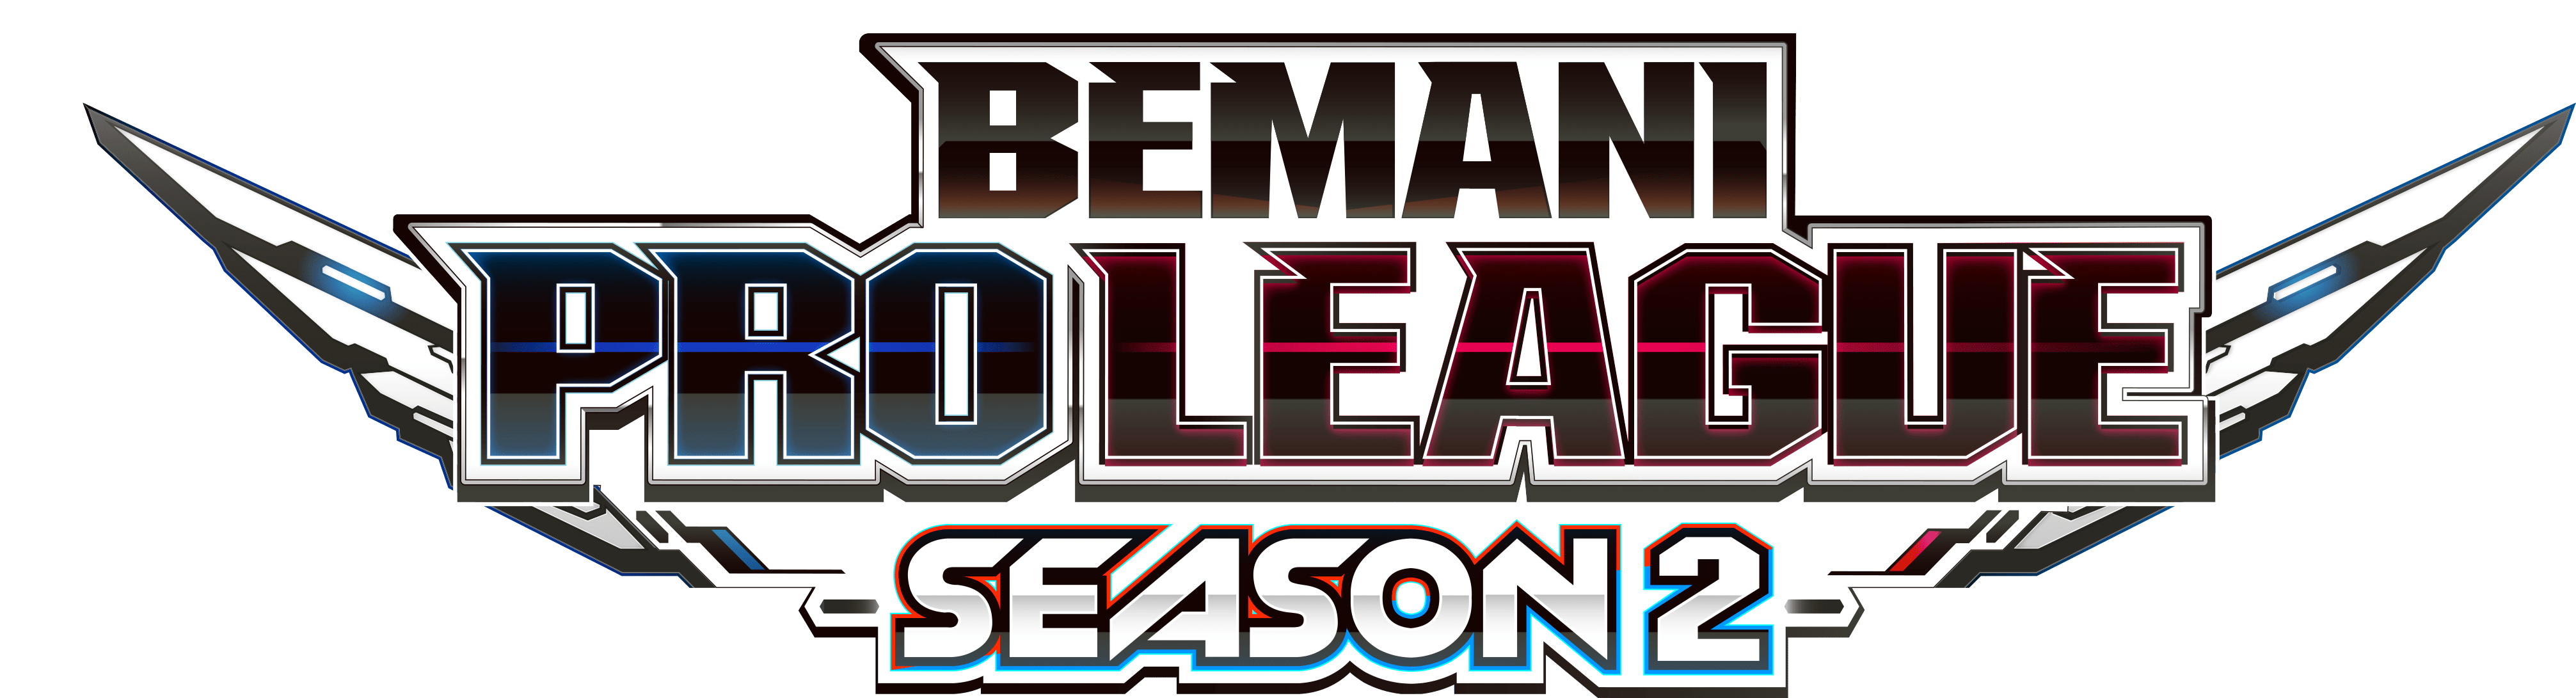 【大会情報】BEMANI PRO LEAGUE SEASON2 レギュラーステージ 第21、22試合【2022年9月7日】